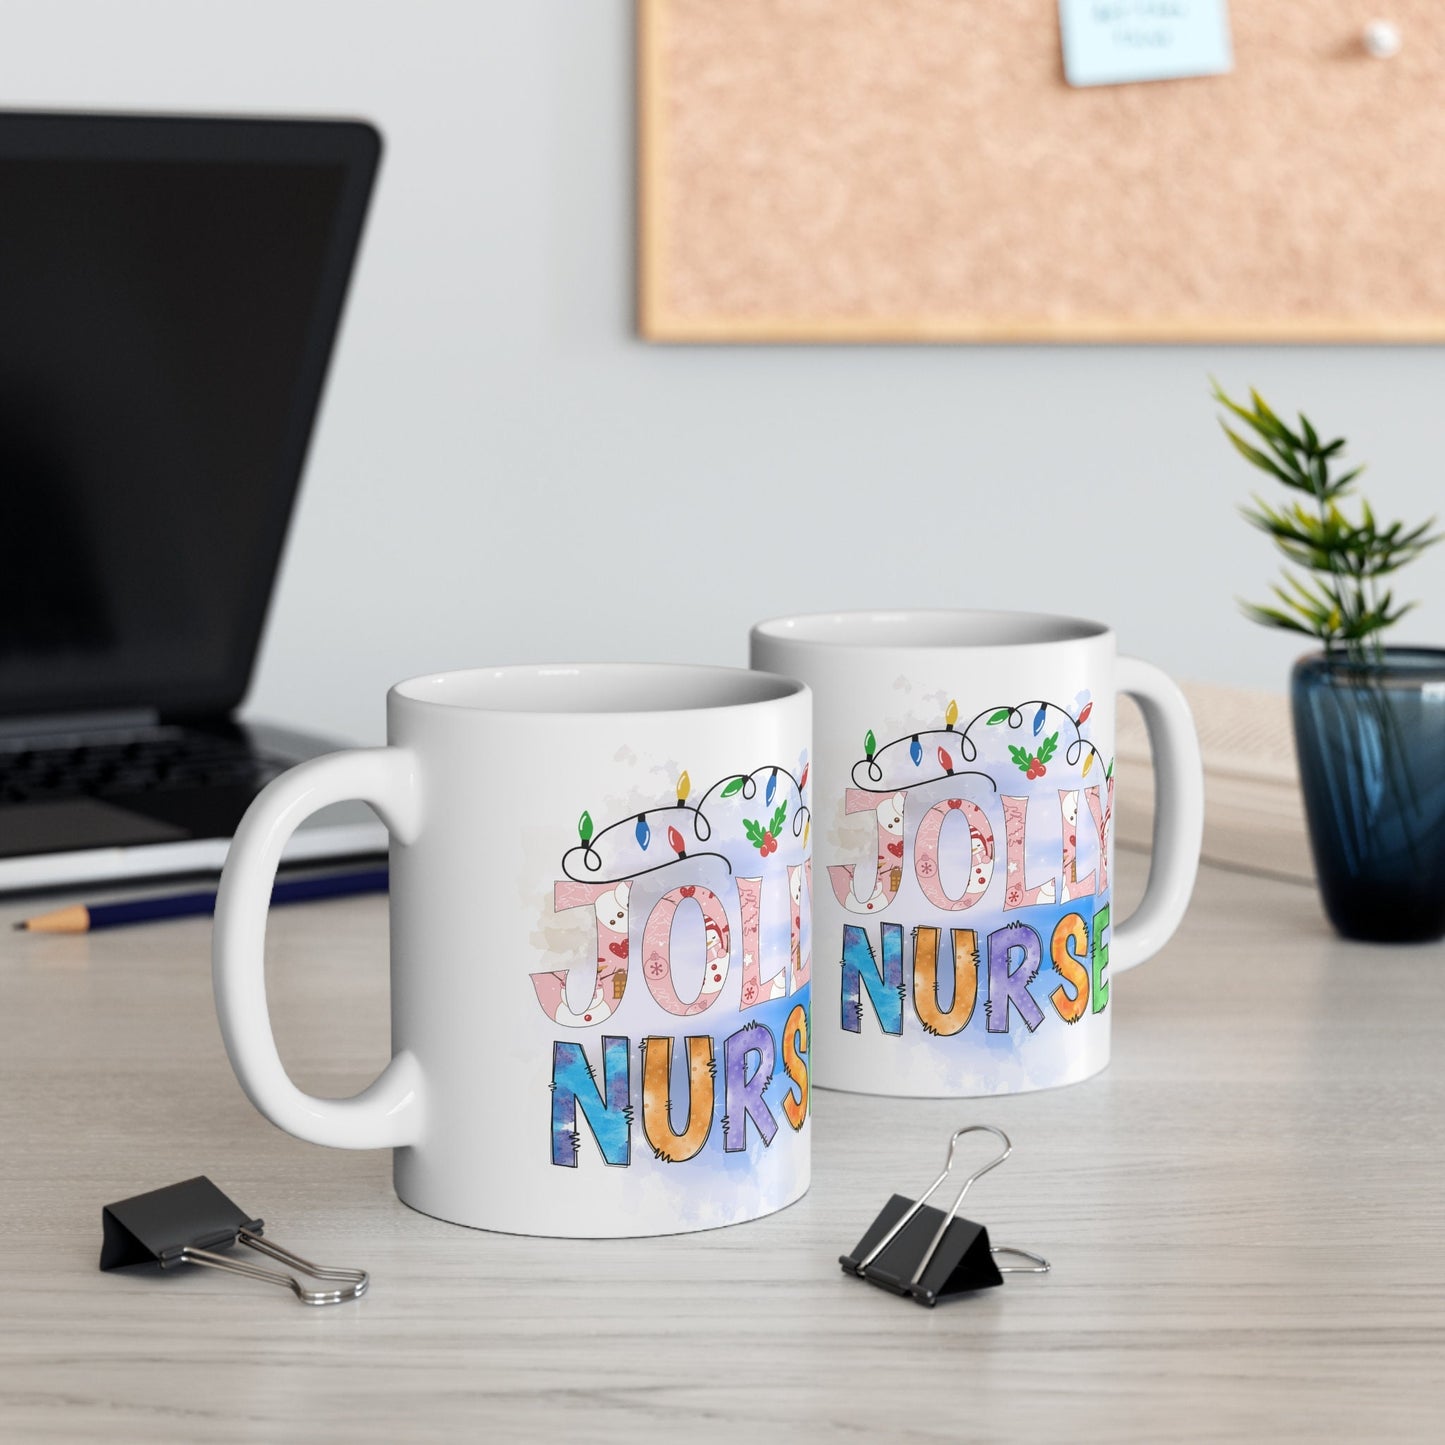 Jolly Nurse Christmas Mug, Perfect Holiday Cheer Coffee Mug, Gift Mug for Christmas Spirit, Cute X-Mas mug for Family and friends